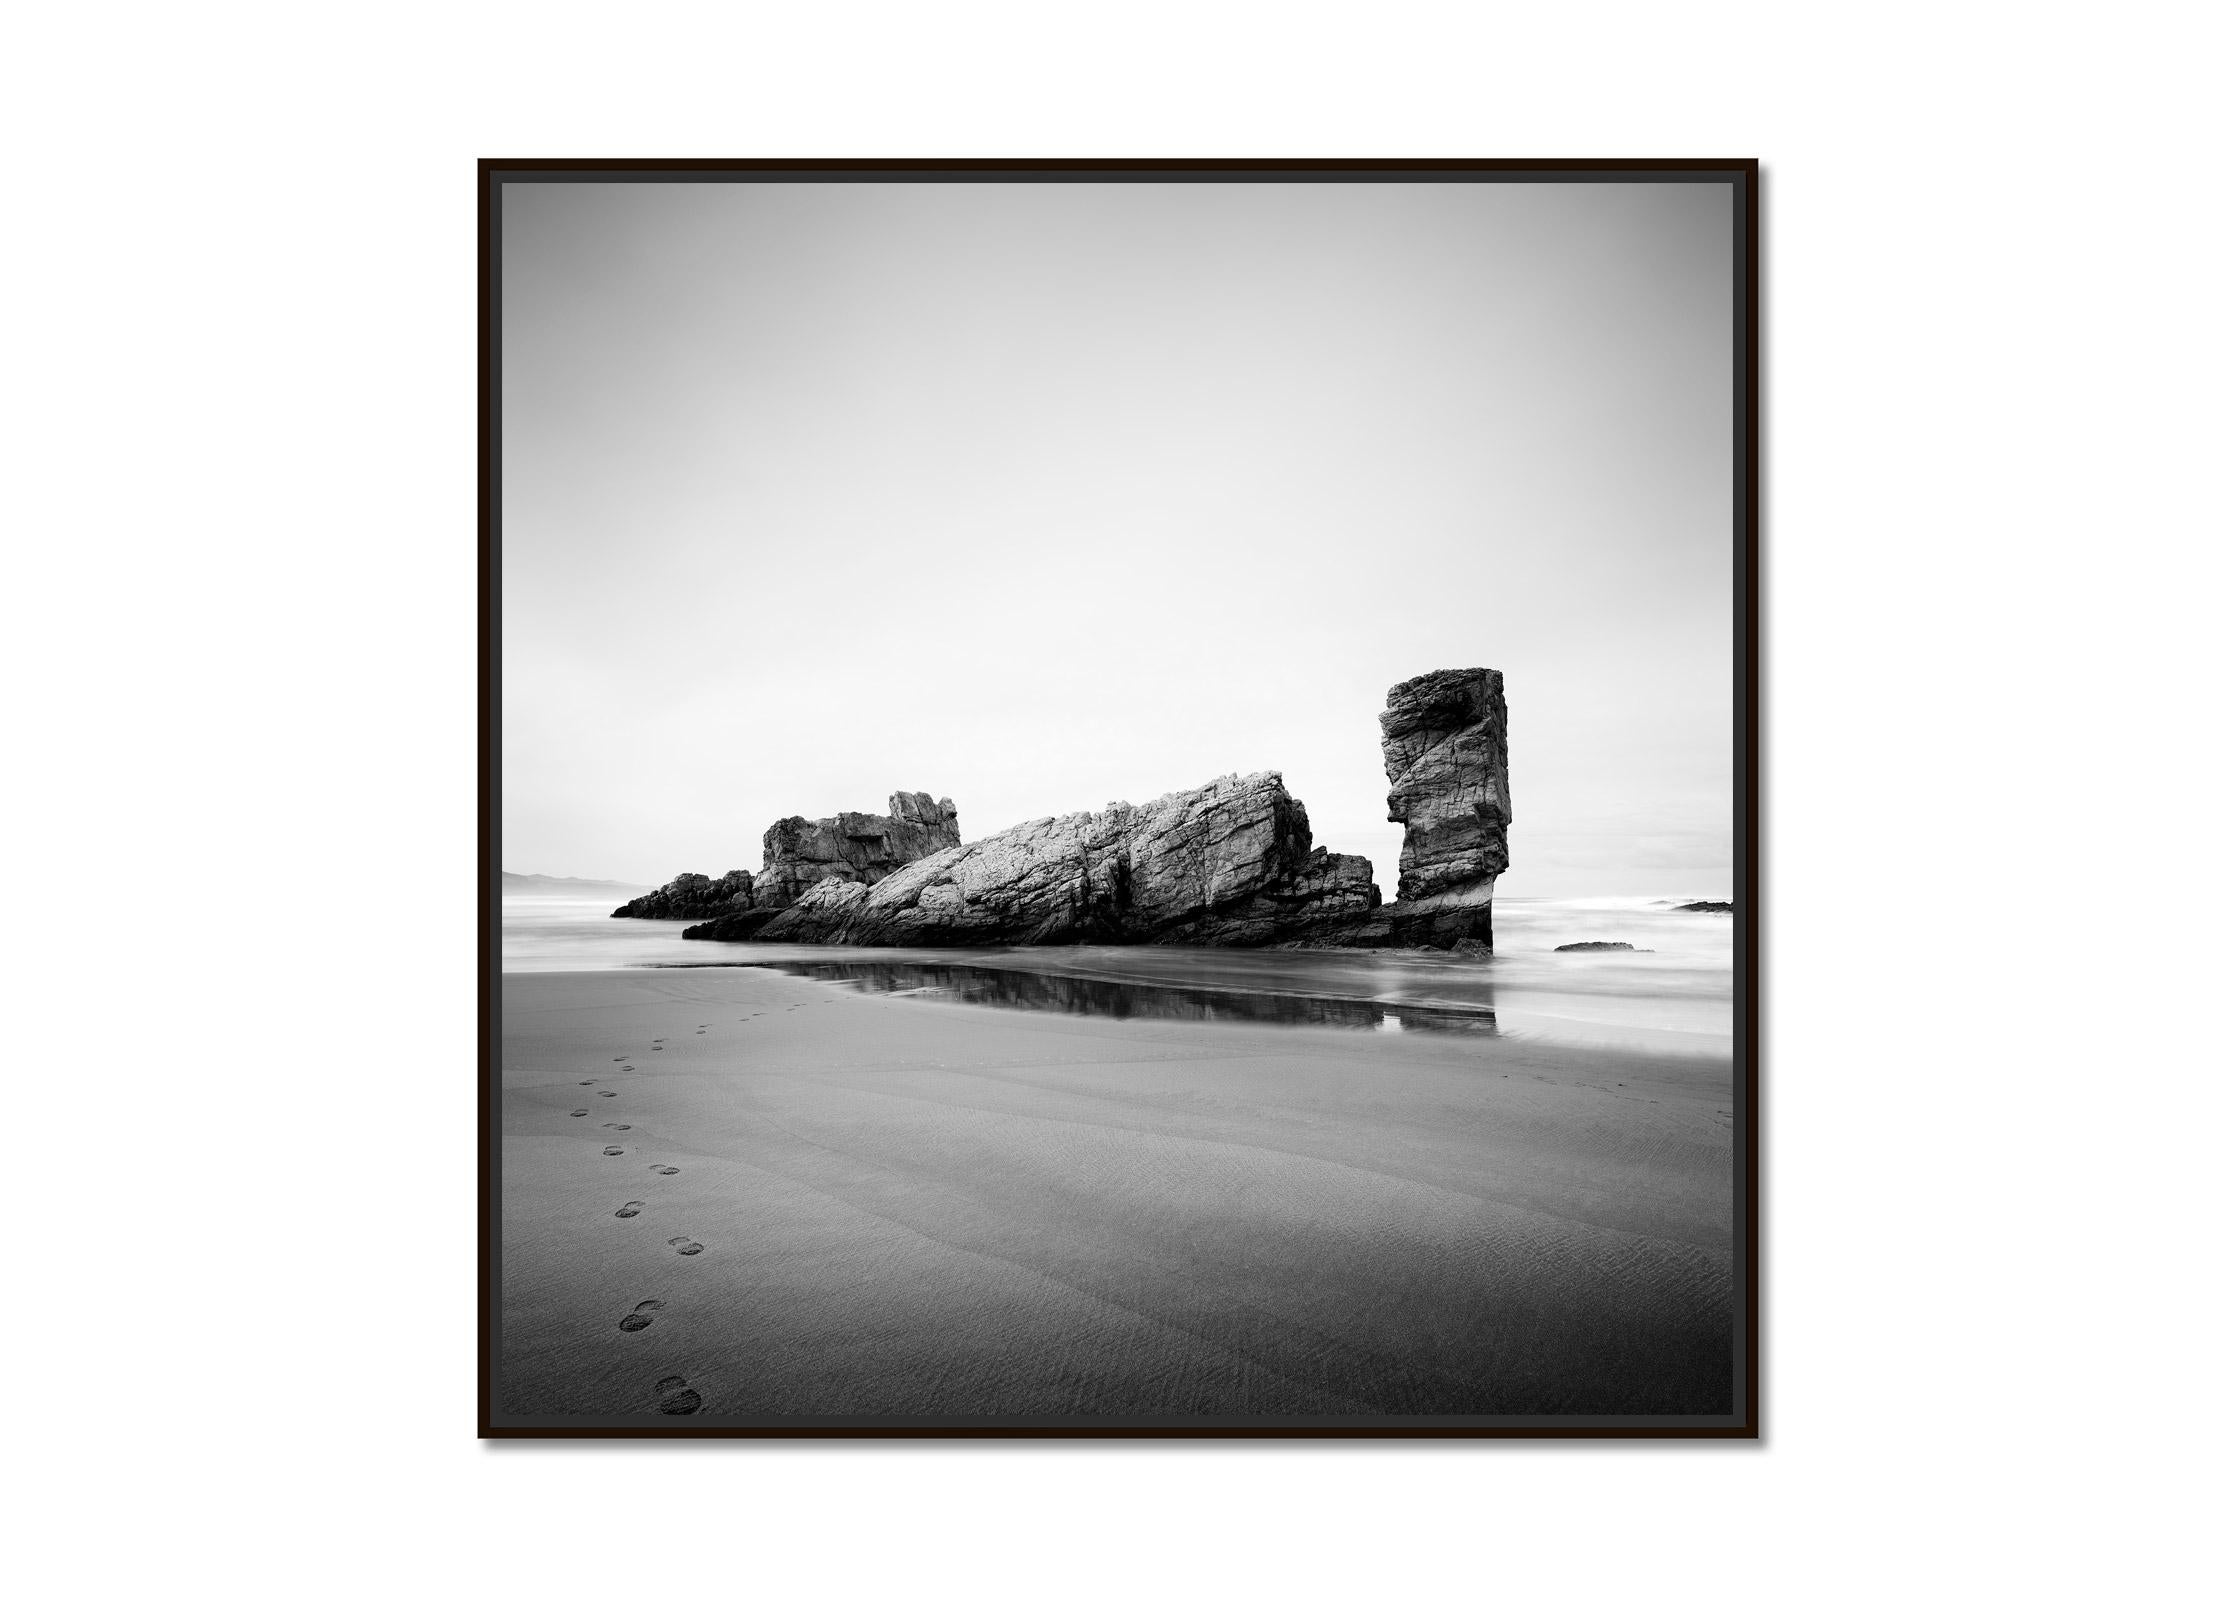 Golfe de Gascogne, rocher géant, plage, Espagne, photographie noir et blanc, paysage - Photograph de Gerald Berghammer